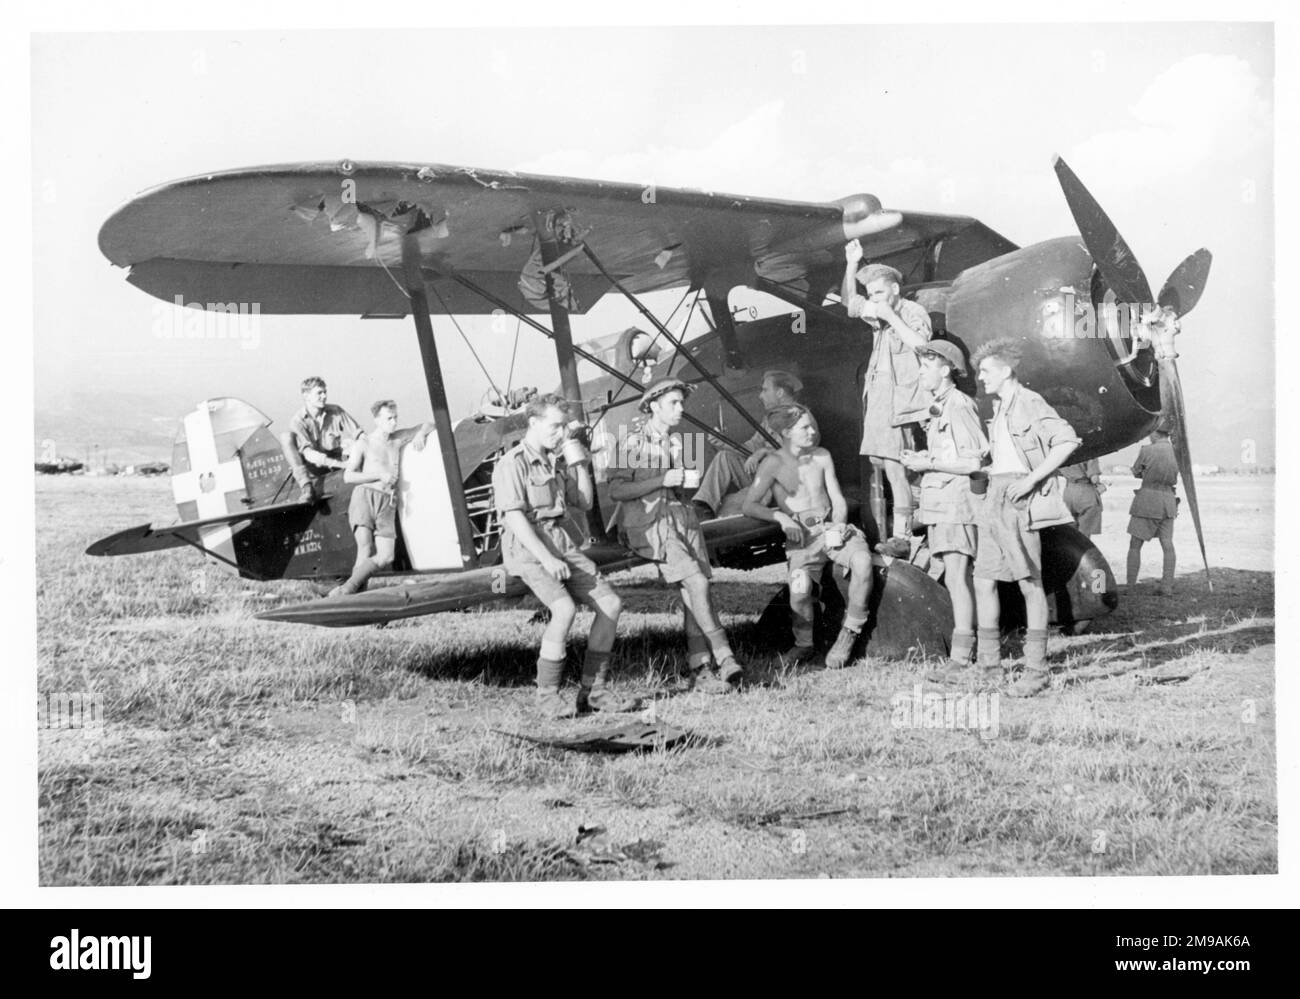 (Ehemals Regia Aeronautica) - Meridionali RO.37, Bereitstellung von Unterkünften für britische Soldaten nach der Gefangennahme im libyschen Feldzug, ca. 1942. Stockfoto